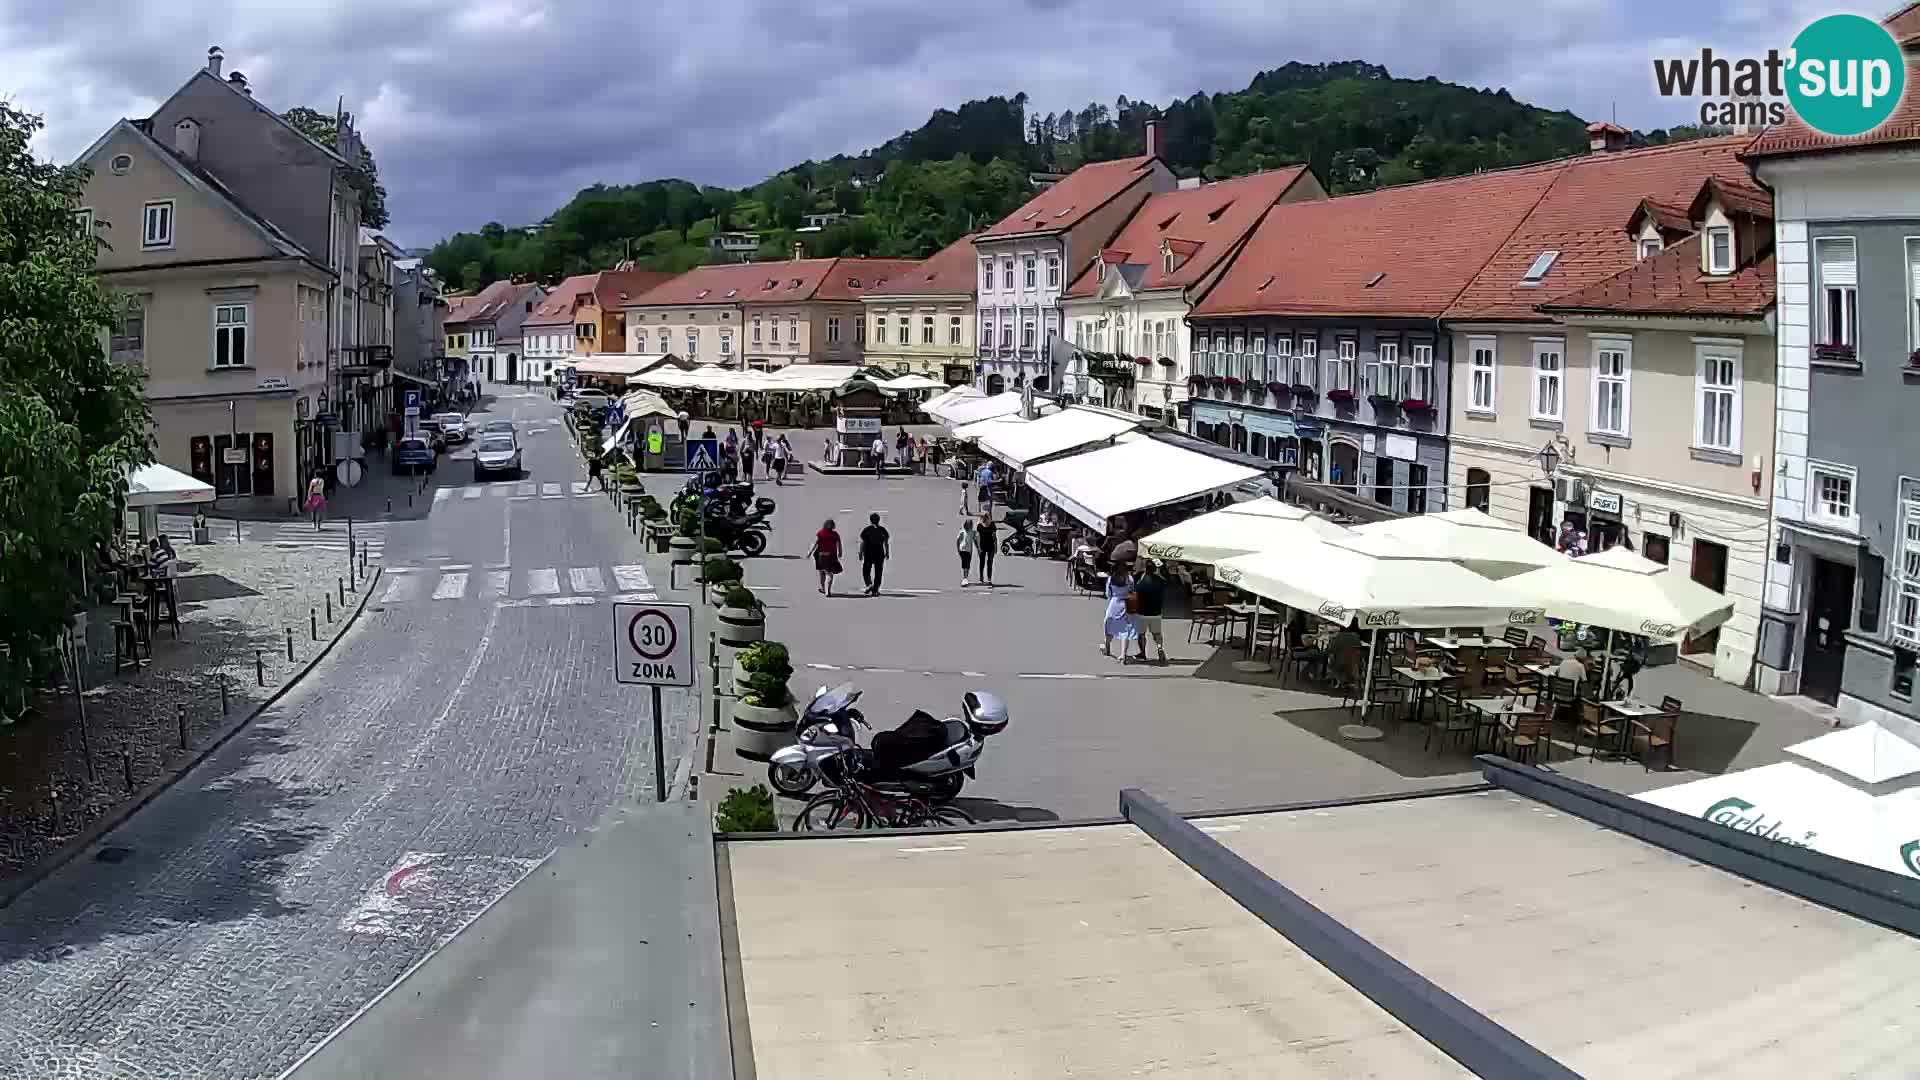 Samobor – Main square dedicated to King Tomislav